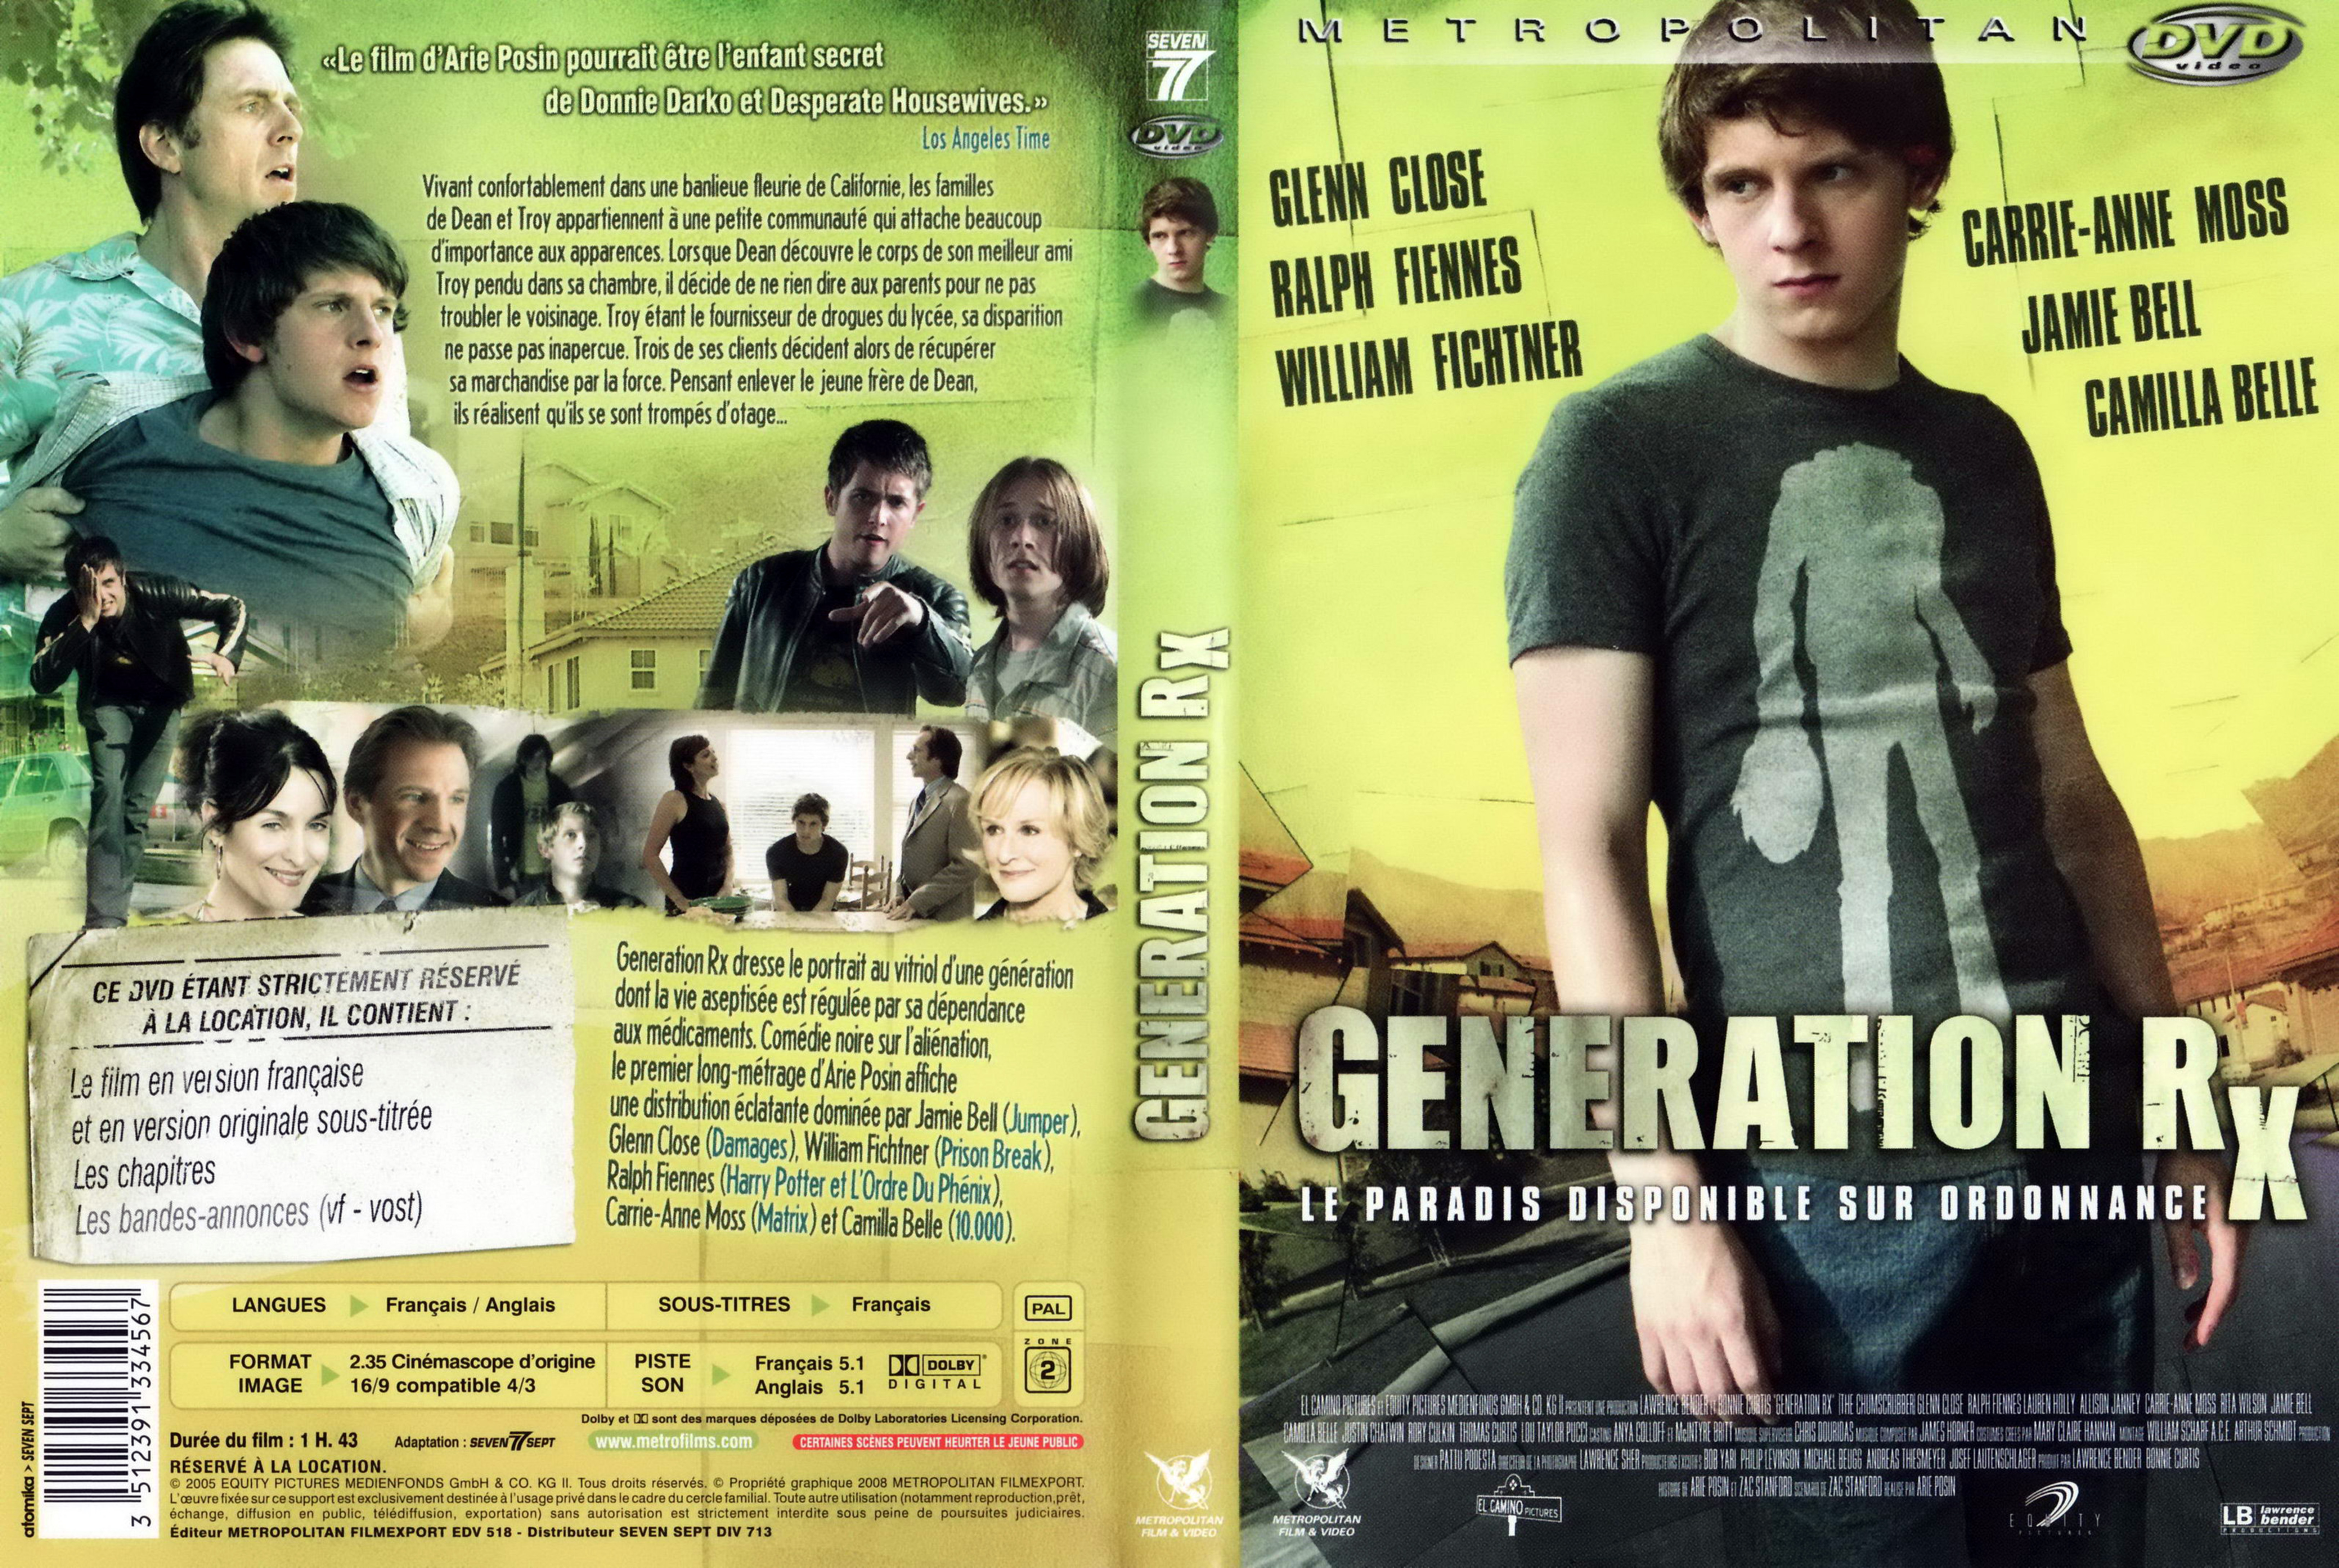 Jaquette DVD Generation RX